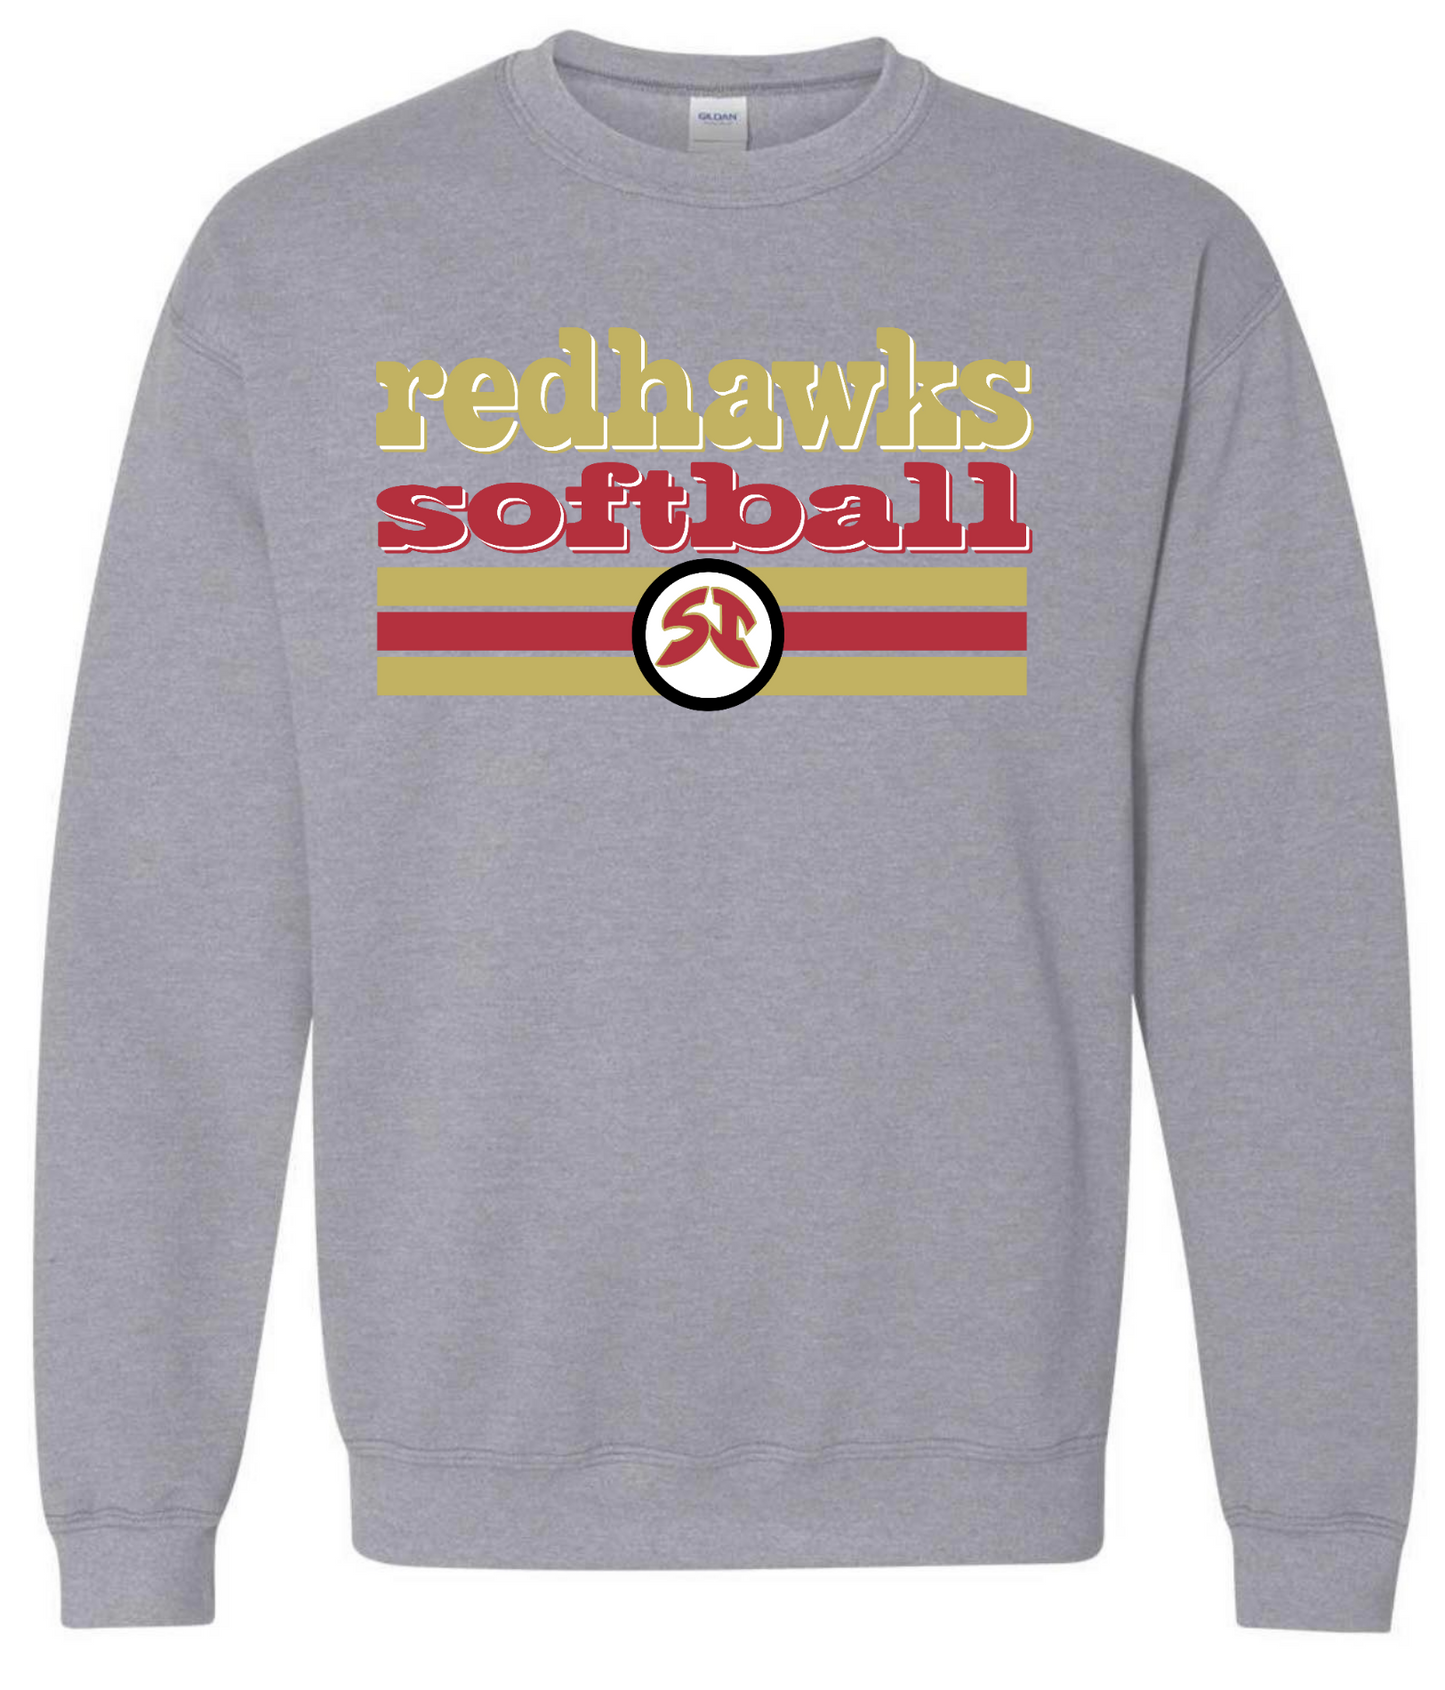 Redhawks Softball Sweatshirt